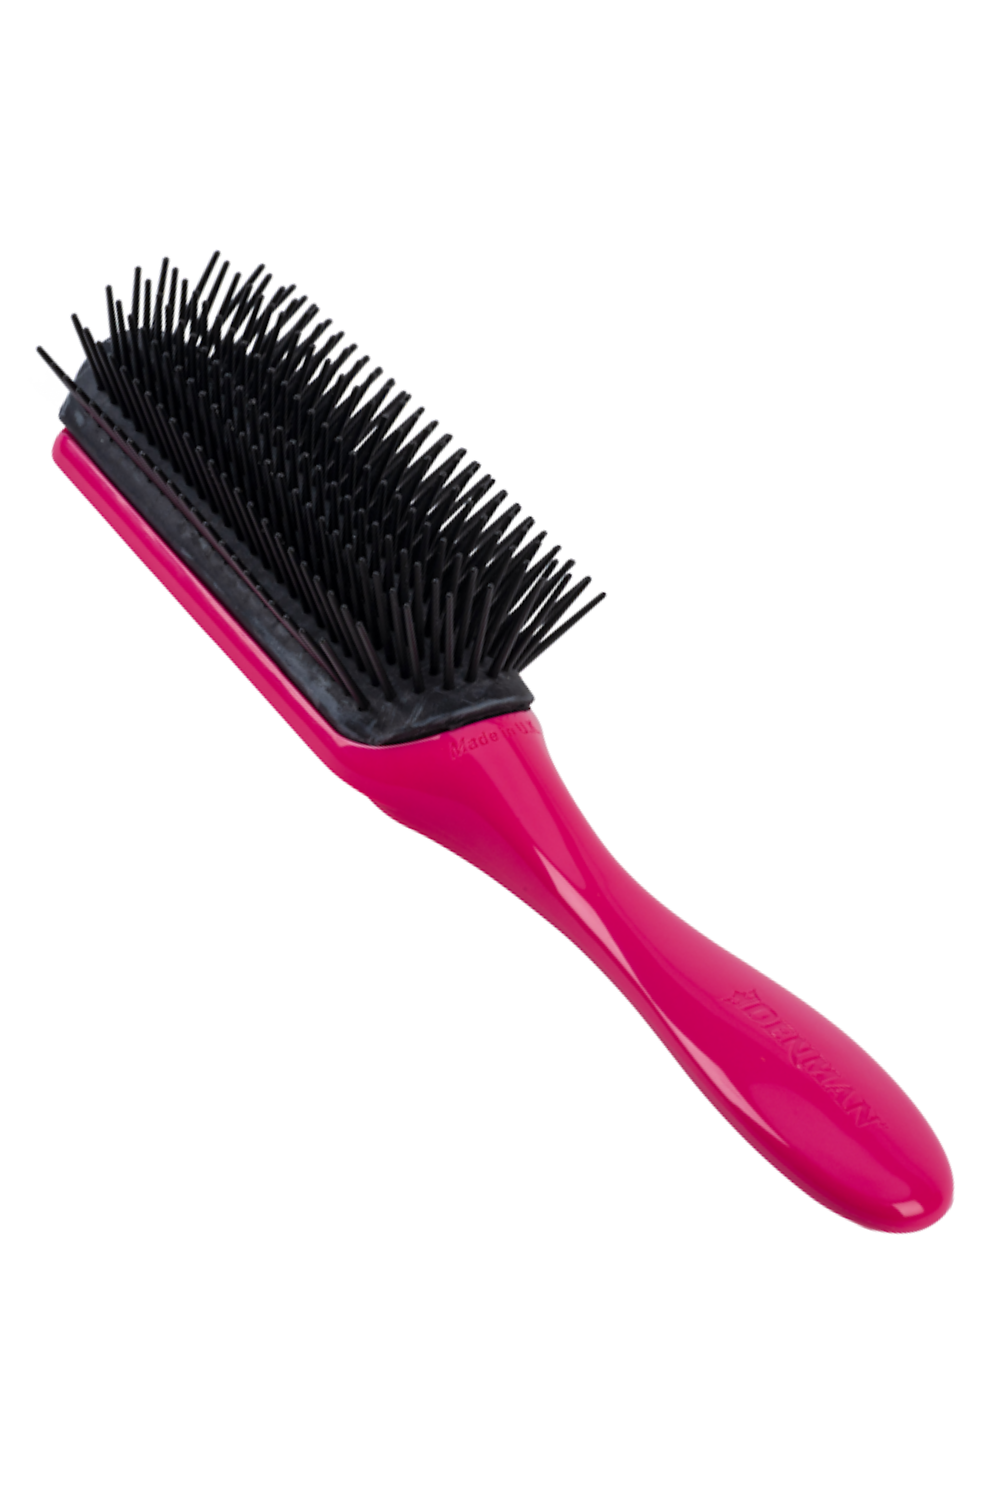 D4 Asian Orchid Pink Hairbrush Curl | | USA Styler Denman Definition Denman | | – Original